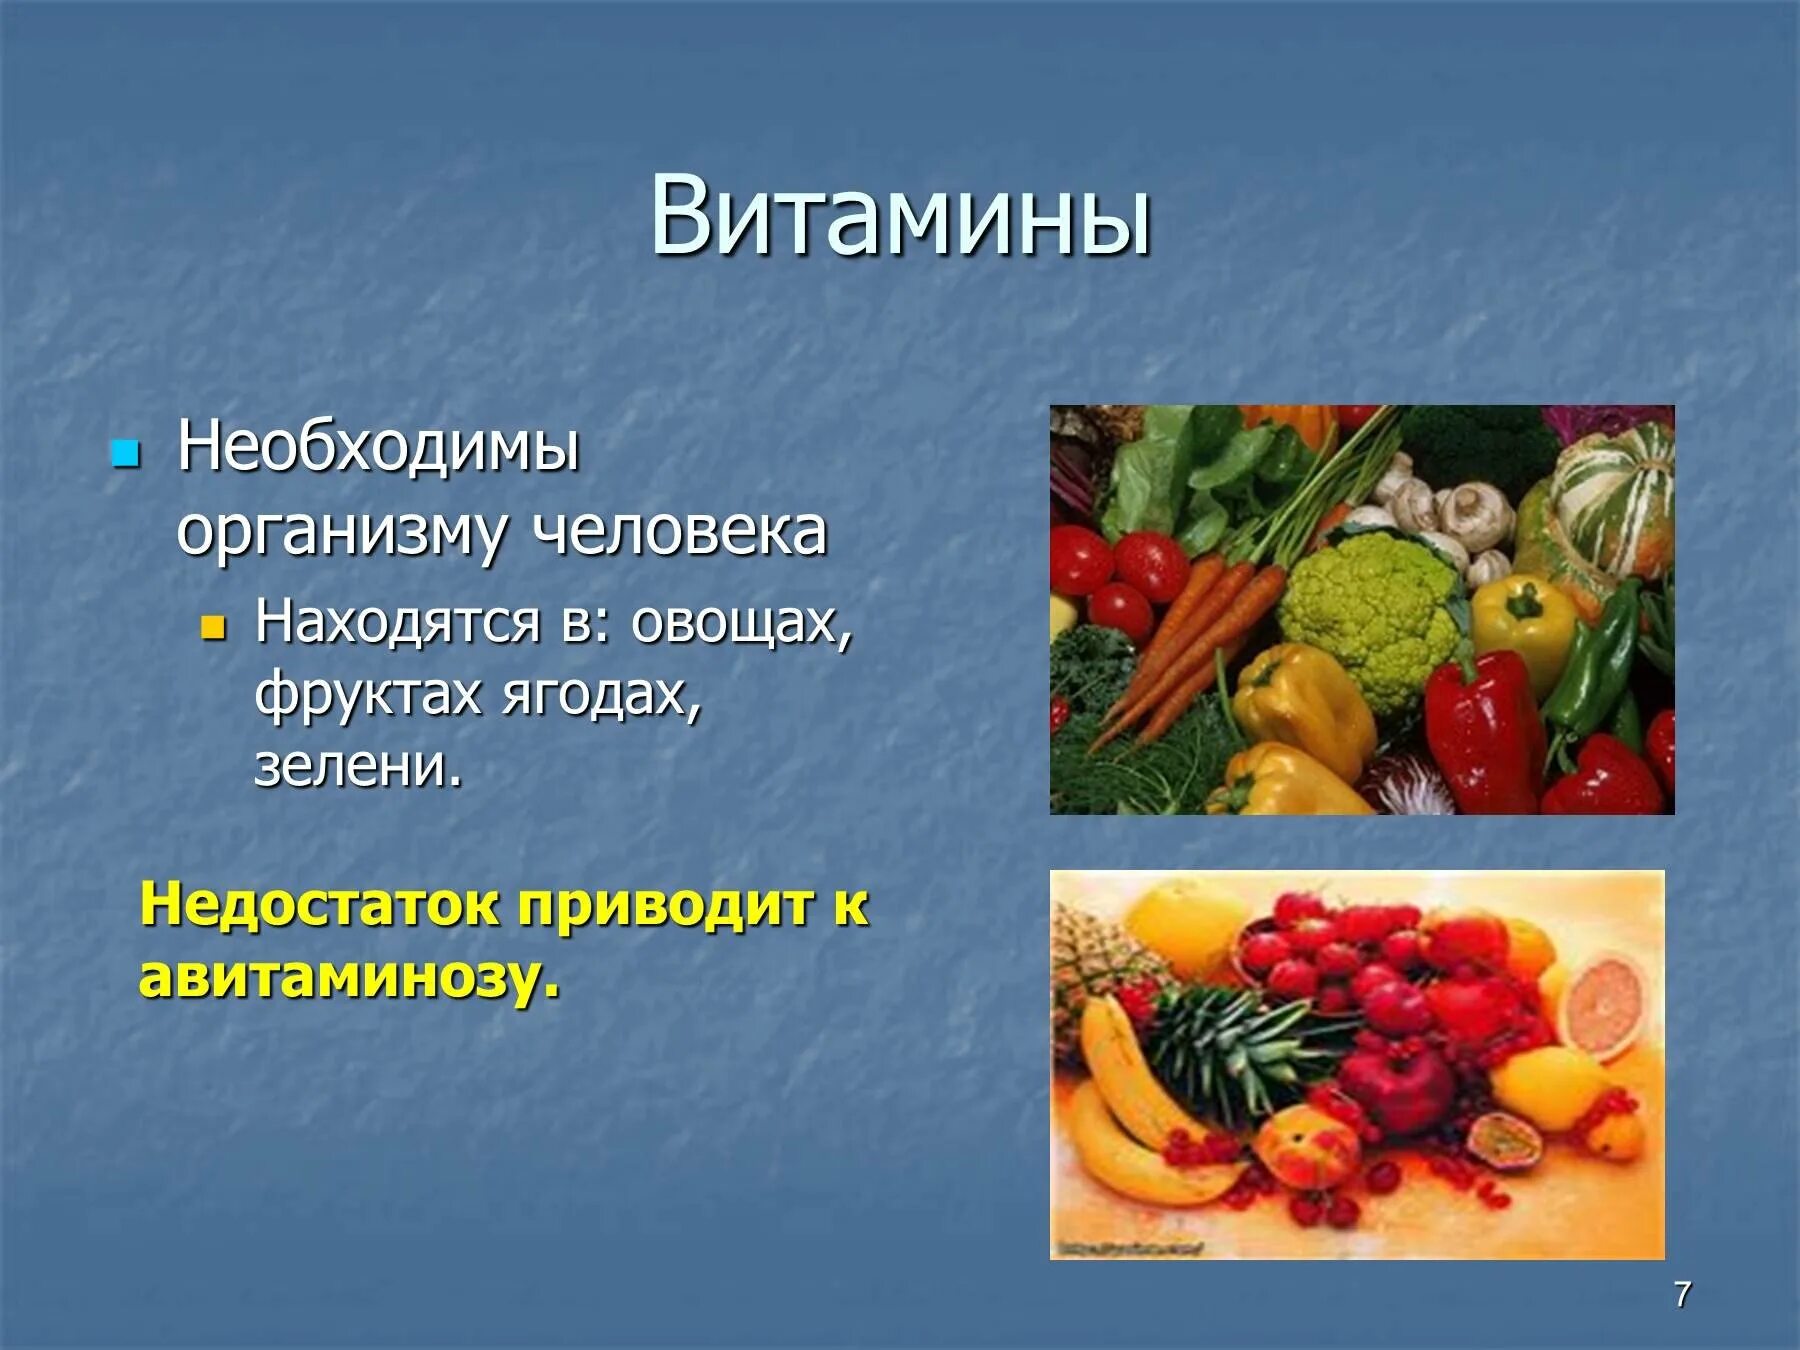 Овощи необходимые организму. Овощи и органы человека фрукты. Овощи и фрукты полезные продукты. Авитаминоз и овощи и фрукты. Какие фрукты и овощи похожи на человеческие органы.